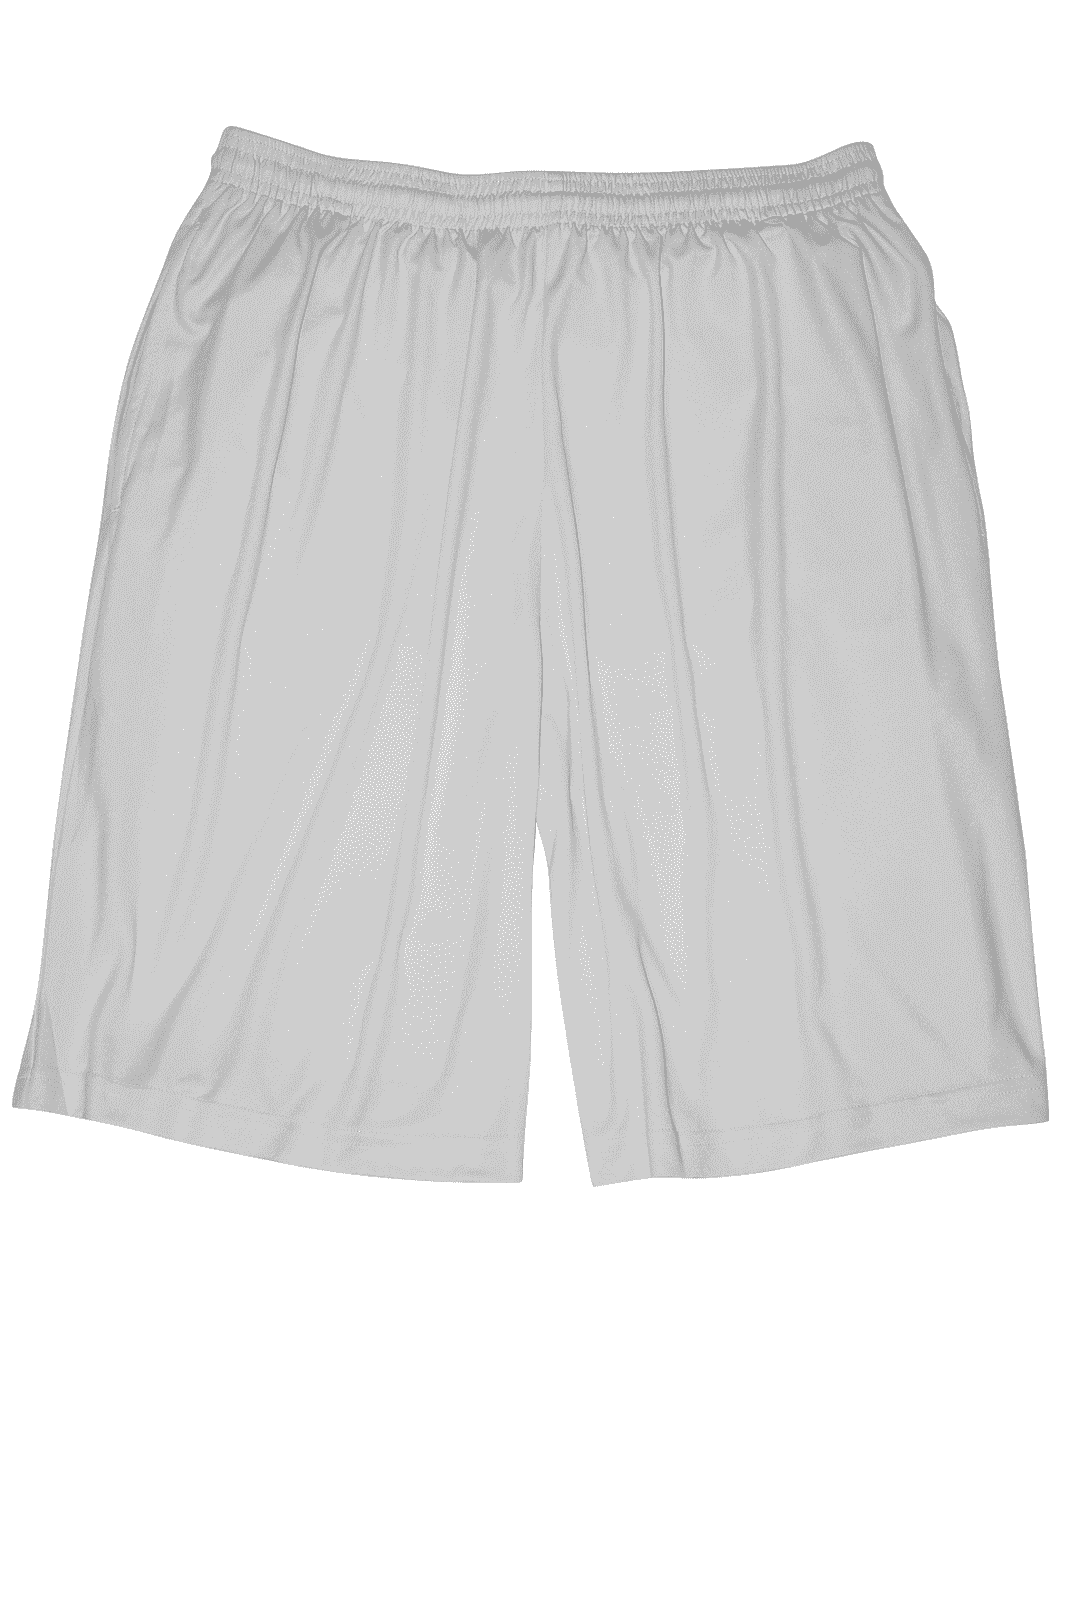 Paragon 600 Aussie Shorts - Aluminum - HIT a Double